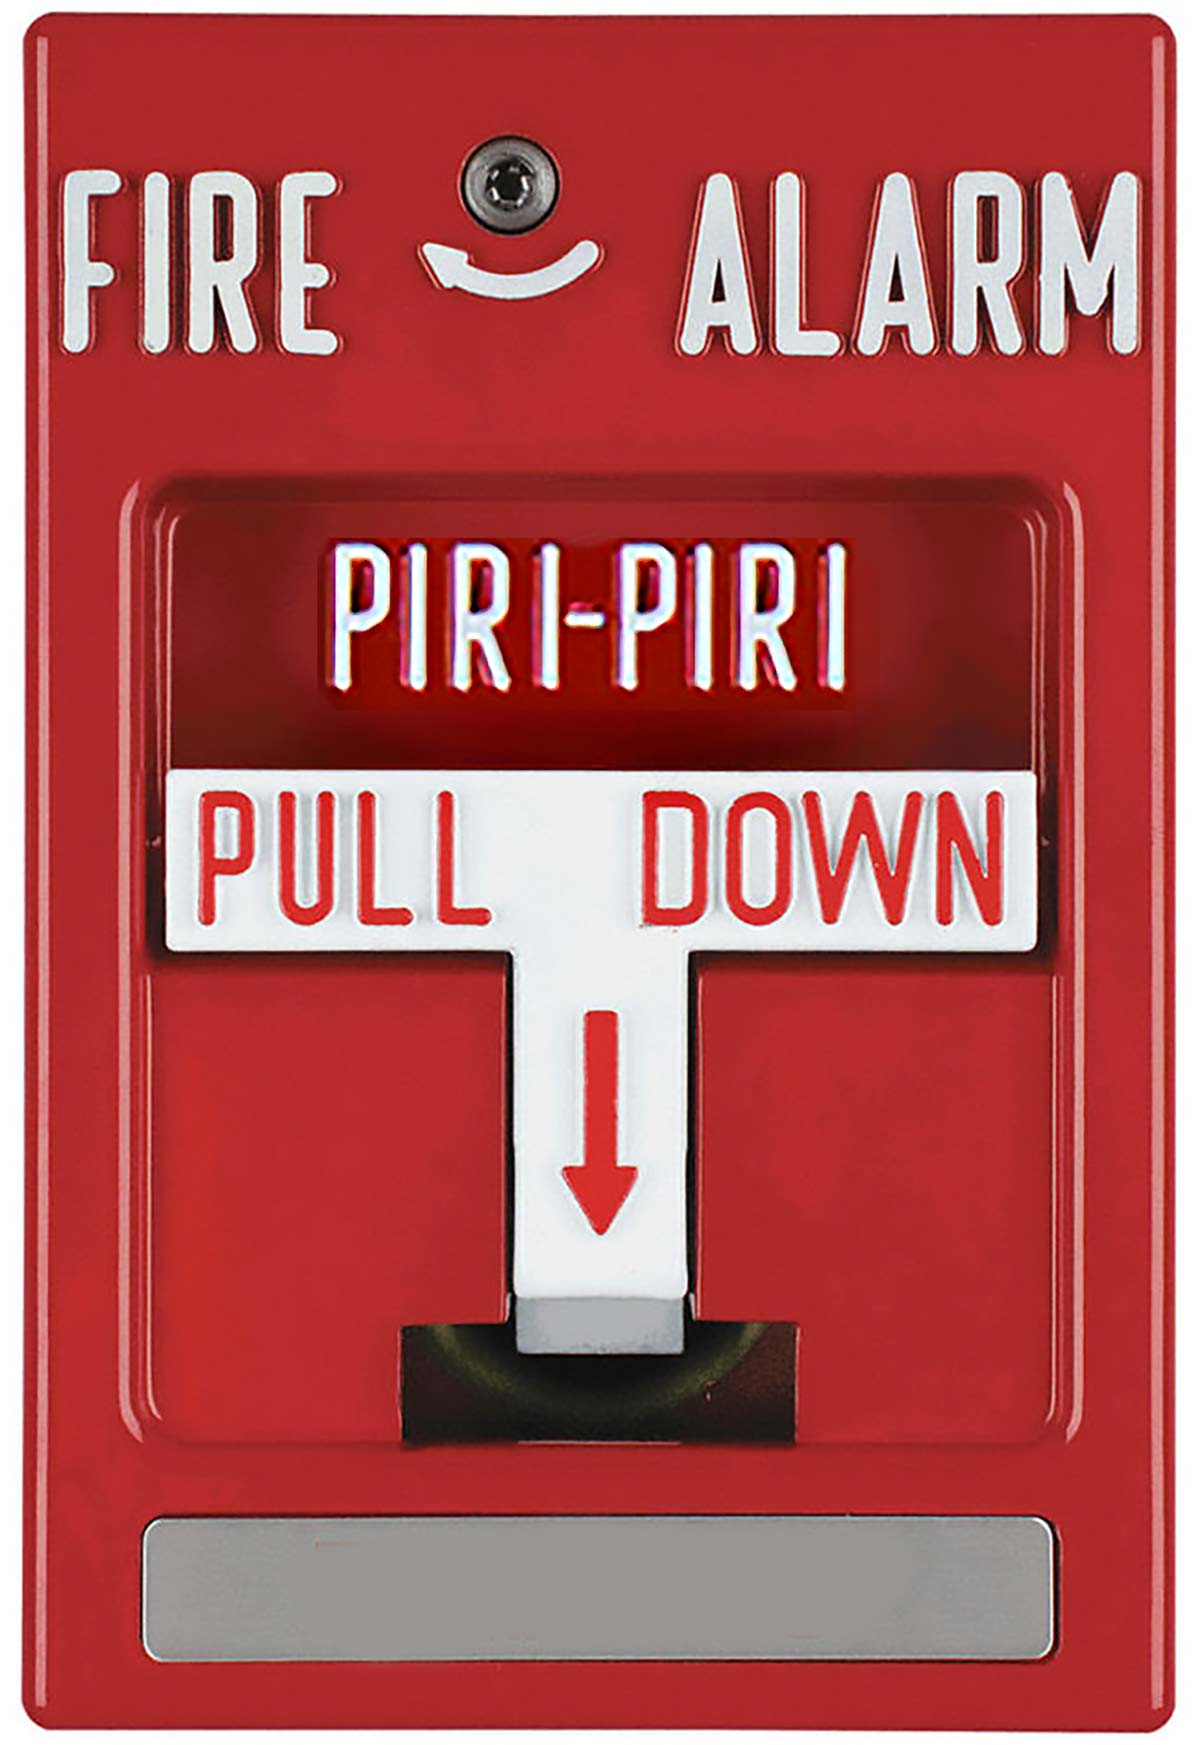 A fire alarm that says piri-piri on it